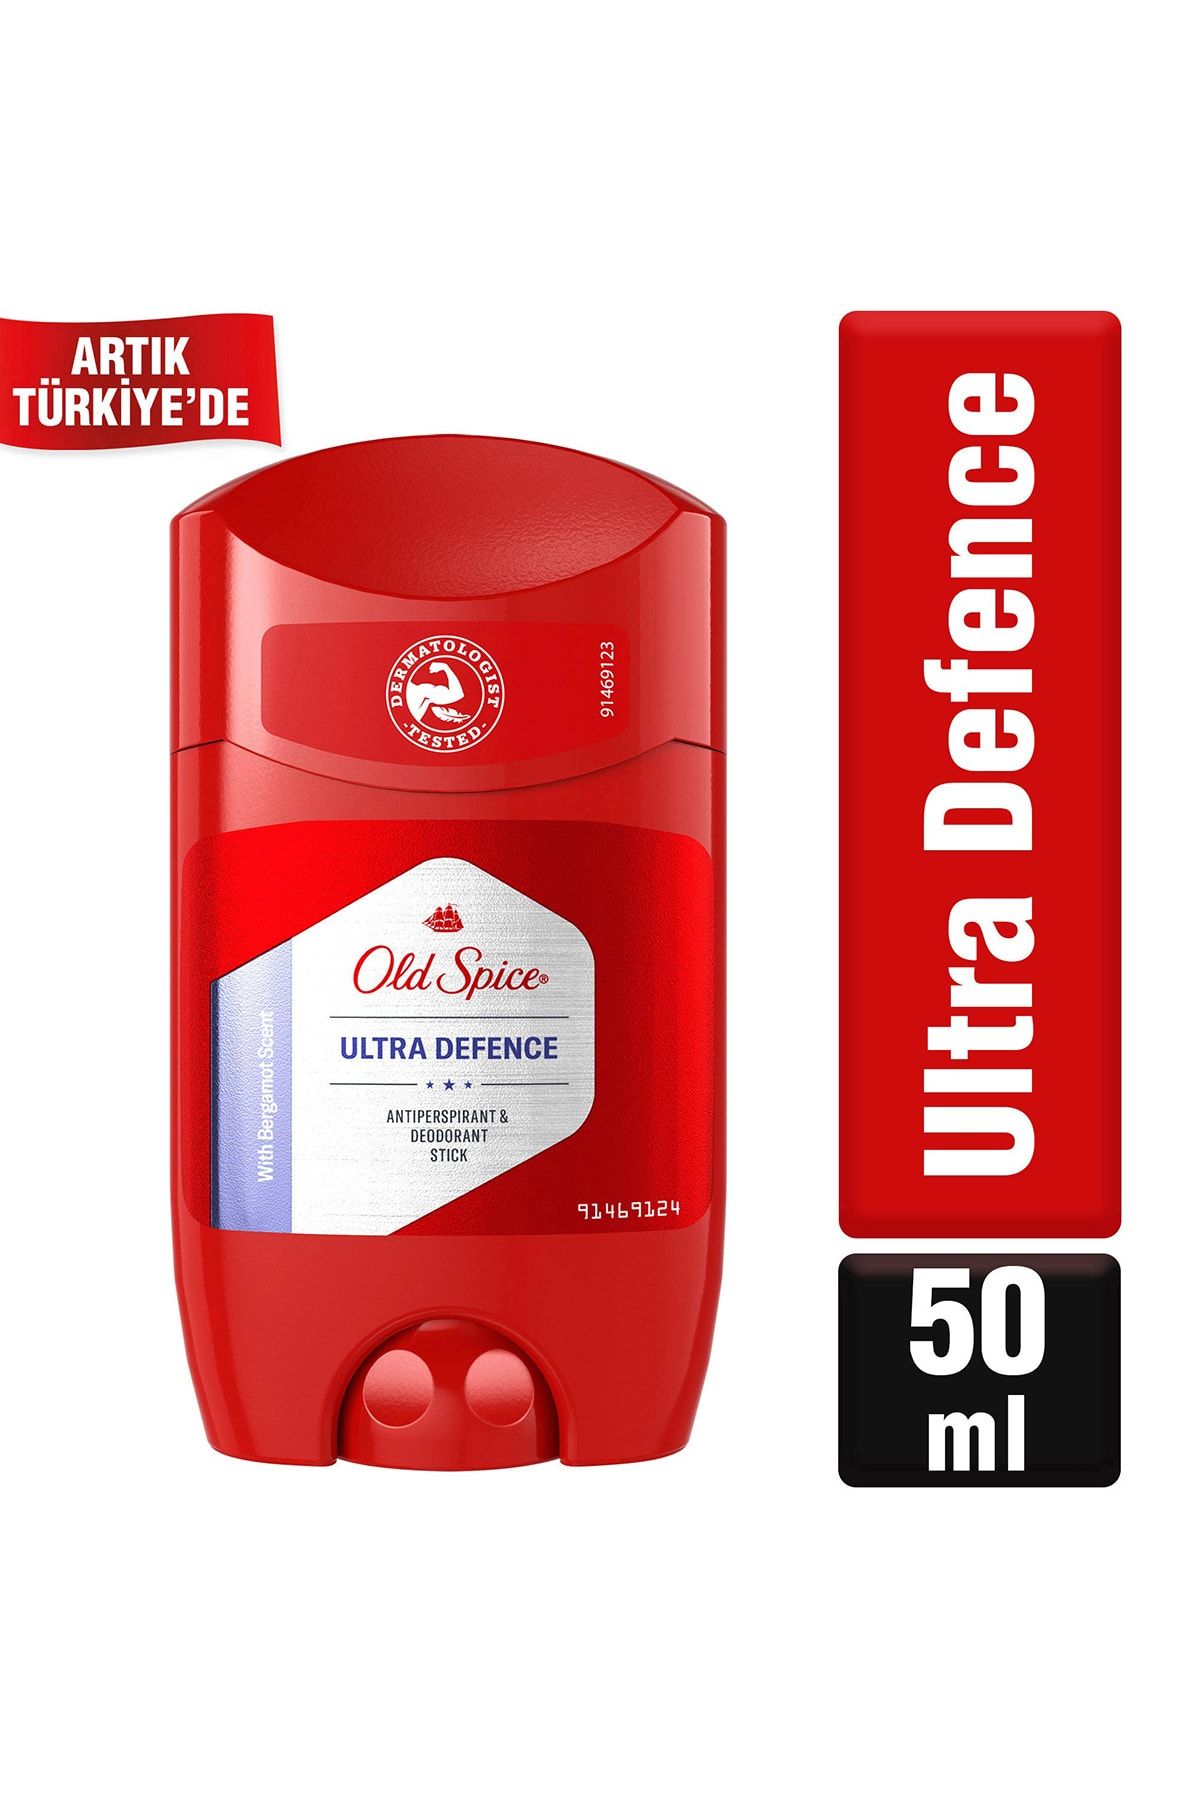 Old Spice Marka: Ultra Defence Erkek Için Terleme Önleyici Stick Deodorant 50 Ml Kategori: Deodoran